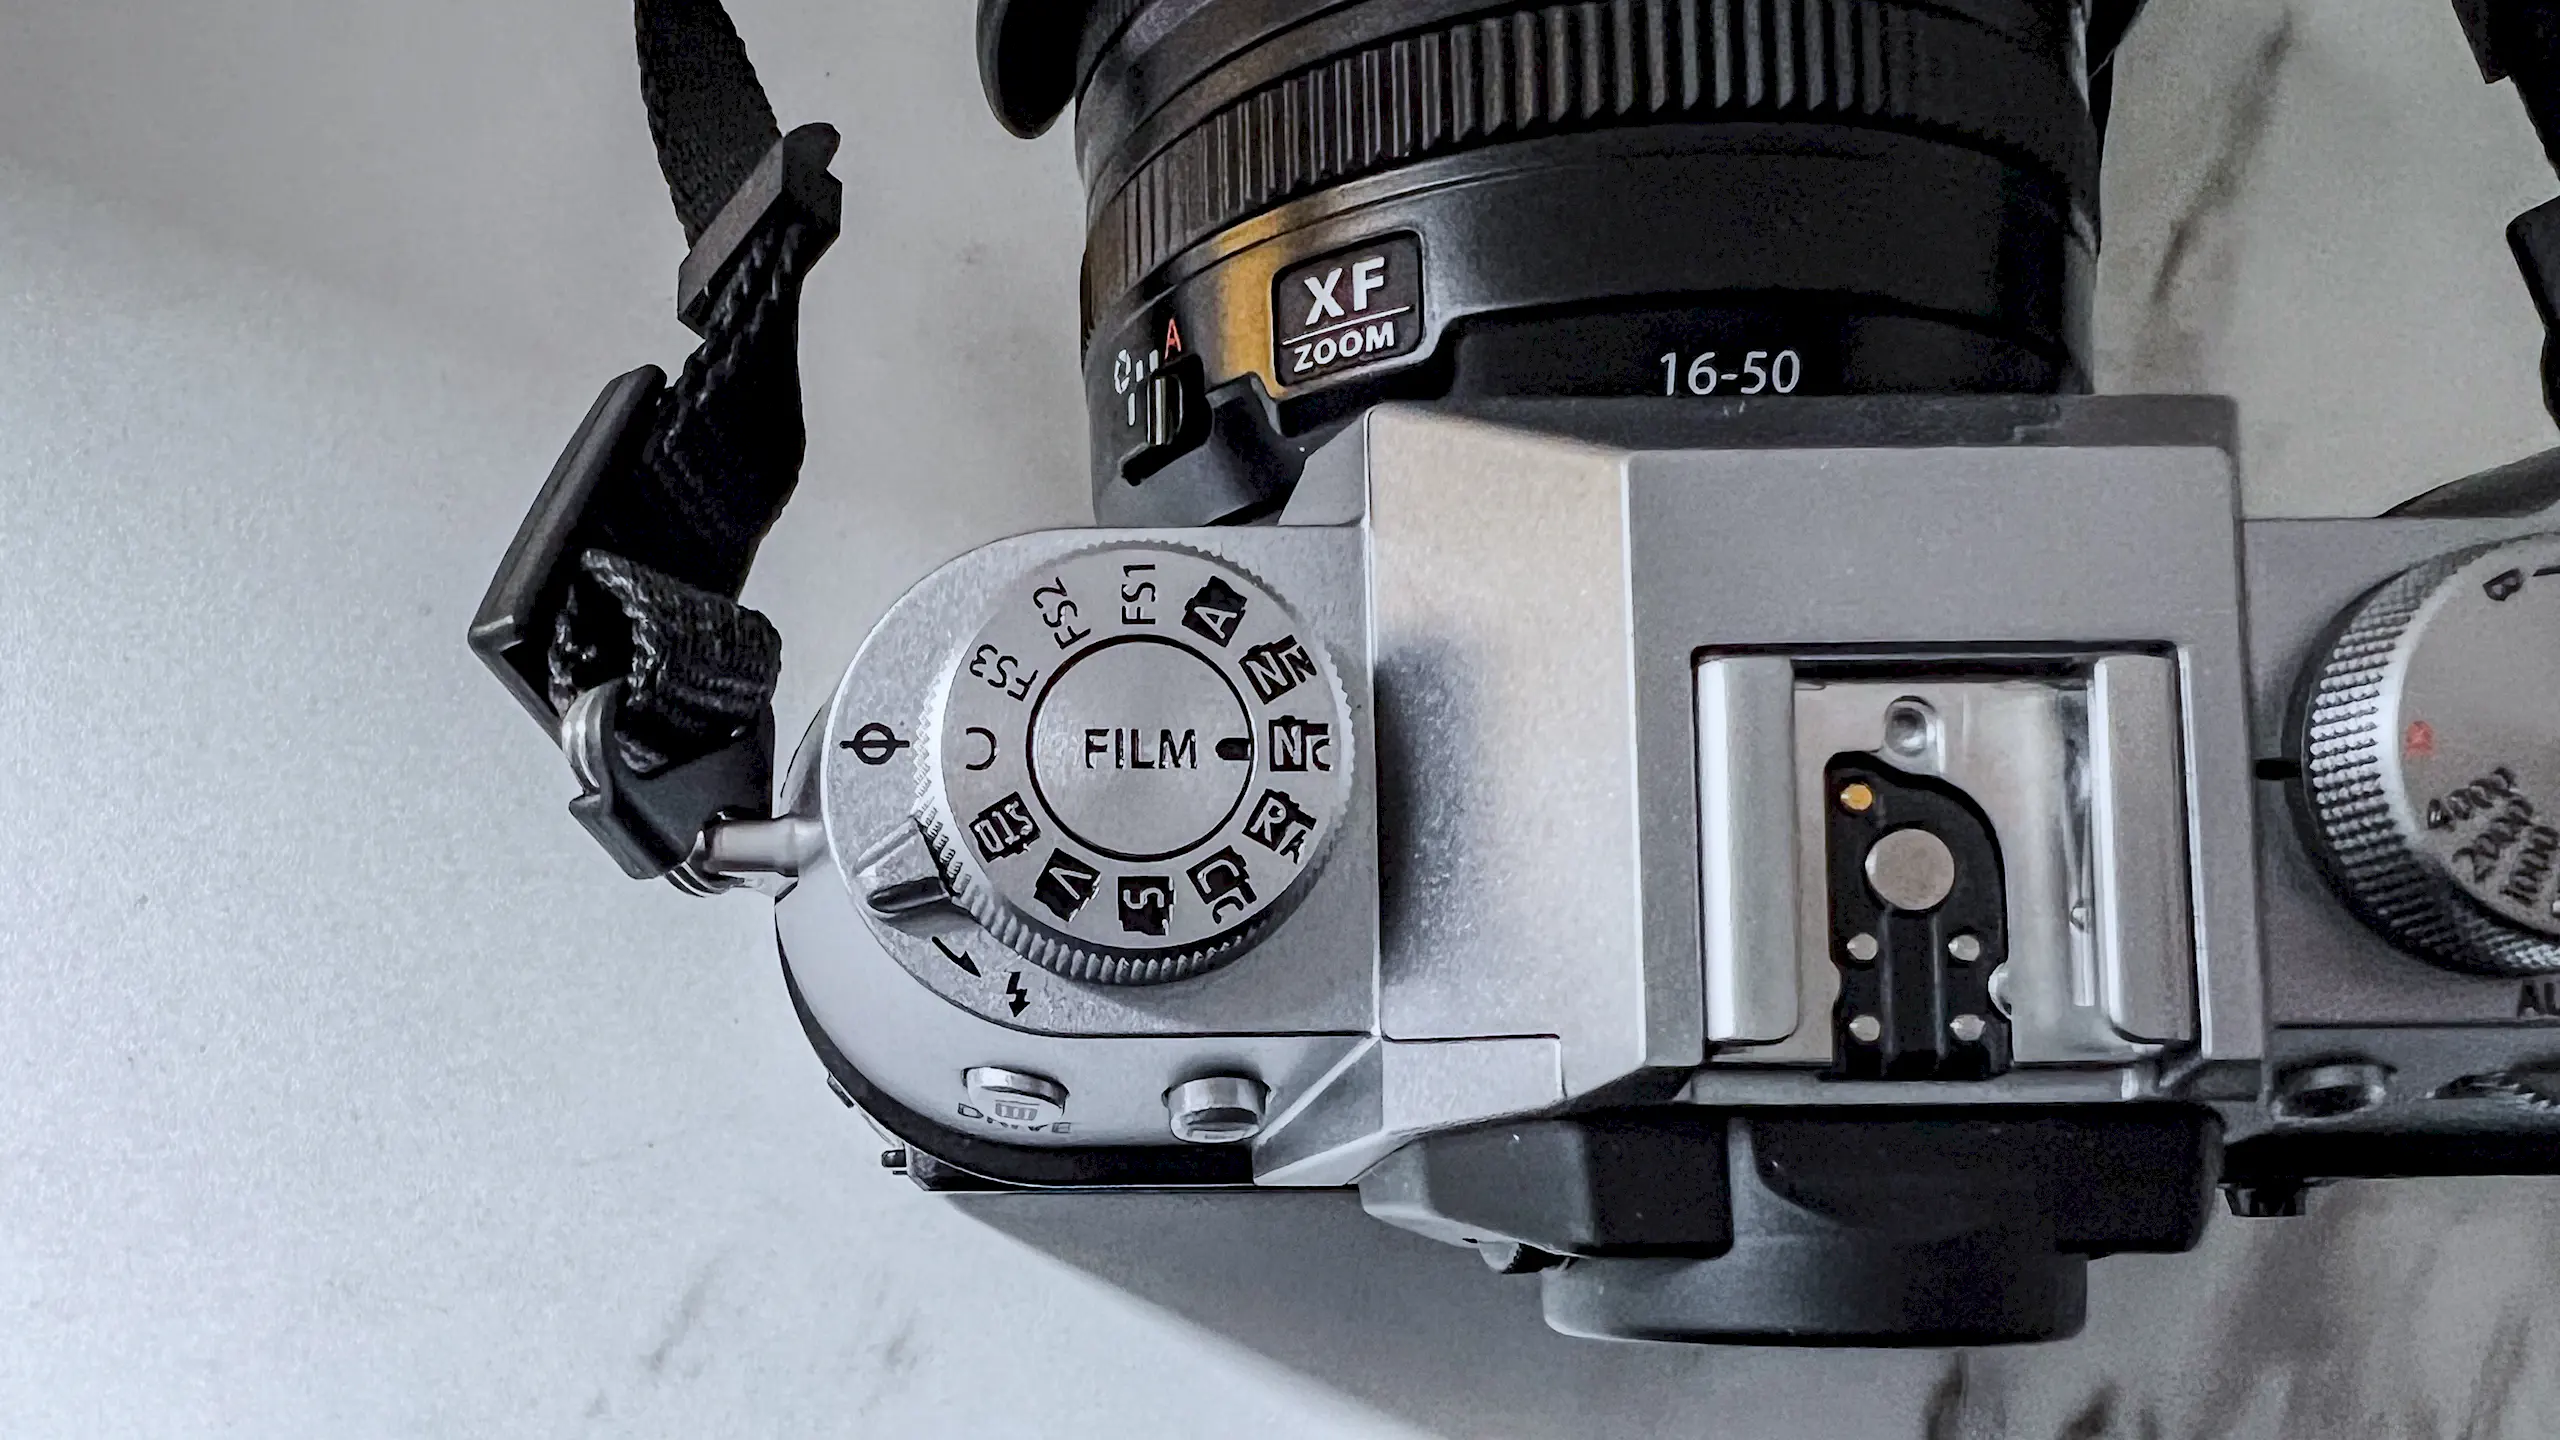 So sánh Fujifilm X-T50 với Fujifilm X-T30 II: Có những nâng cấp "xịn" nào trên thế hệ mới?